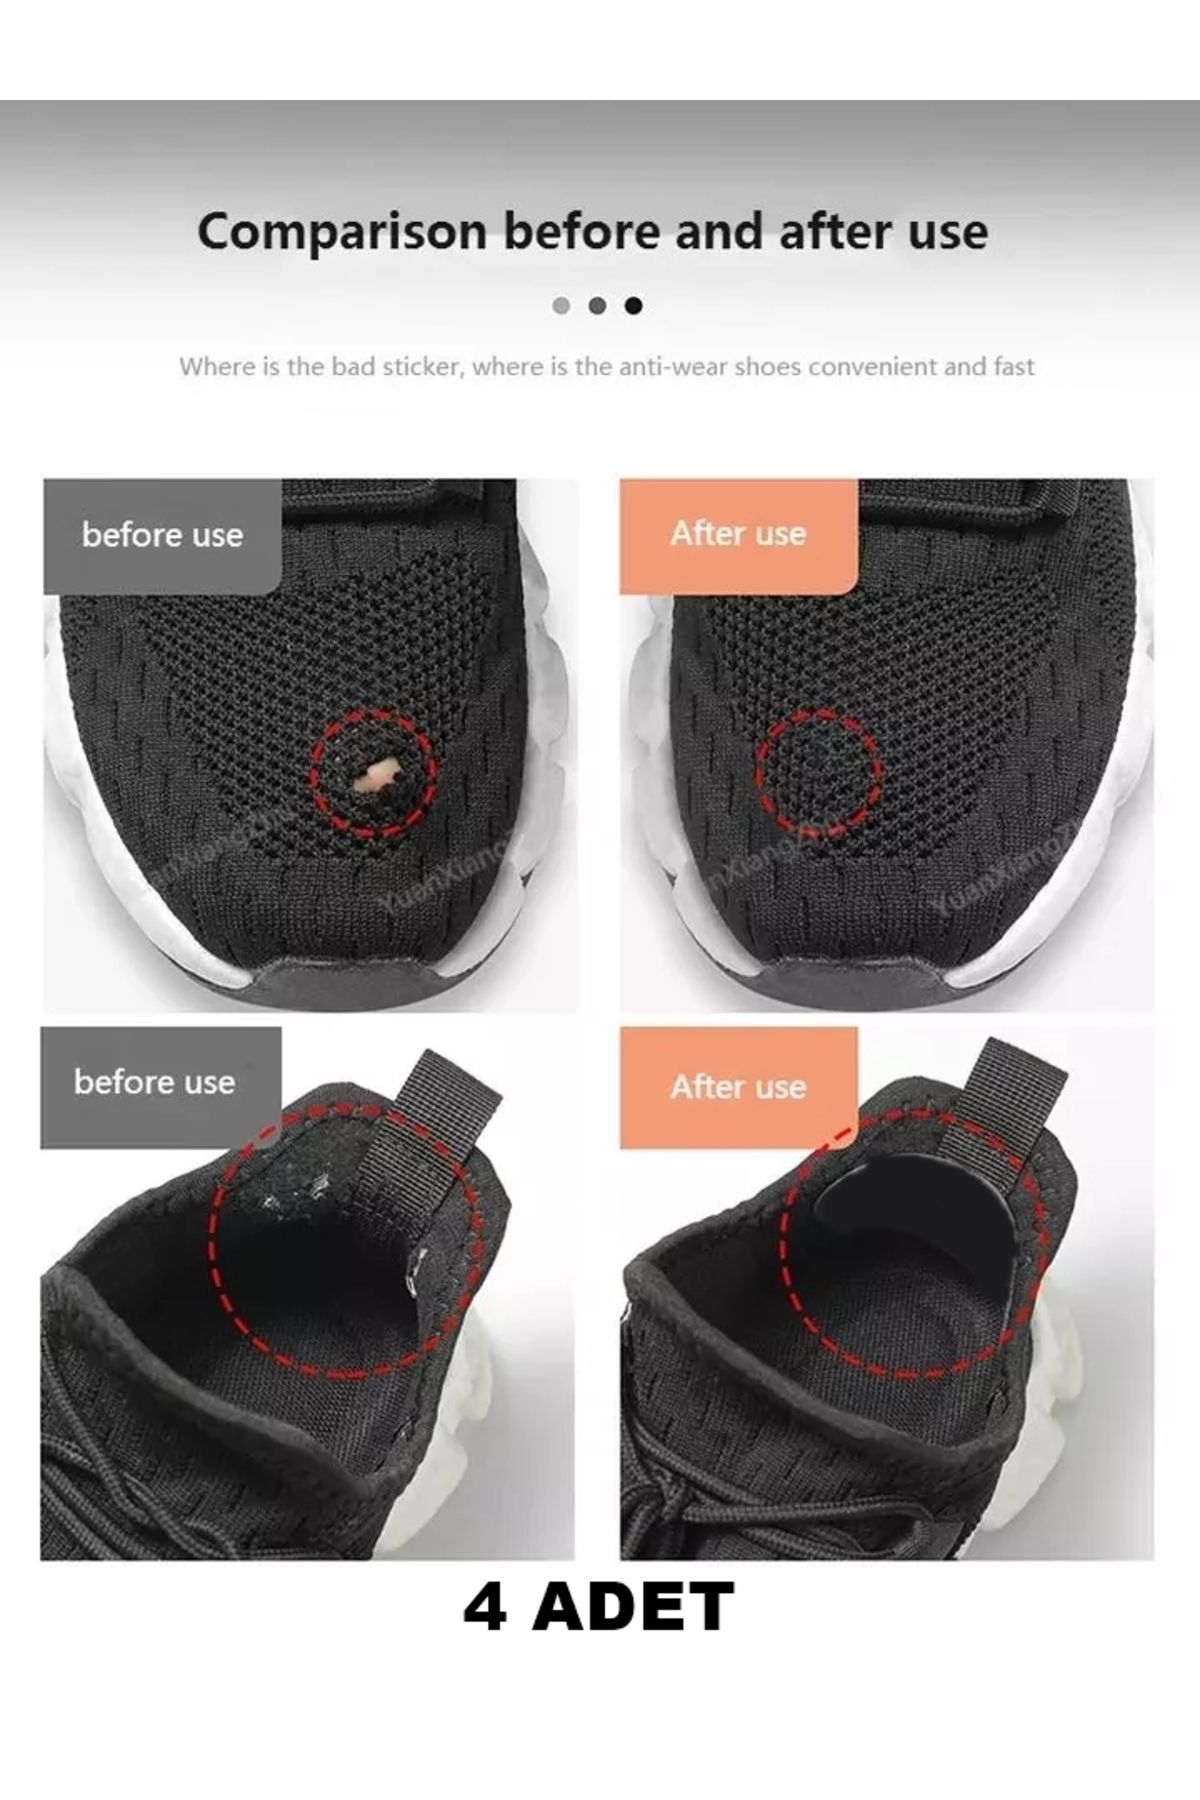 LOVYCO 4 Adet Yuvarlak Siyah Ayakkabı Yaması Spor Ayakkabı Tamir Delik Onarım Yaması Kendinden Yapışkanlı